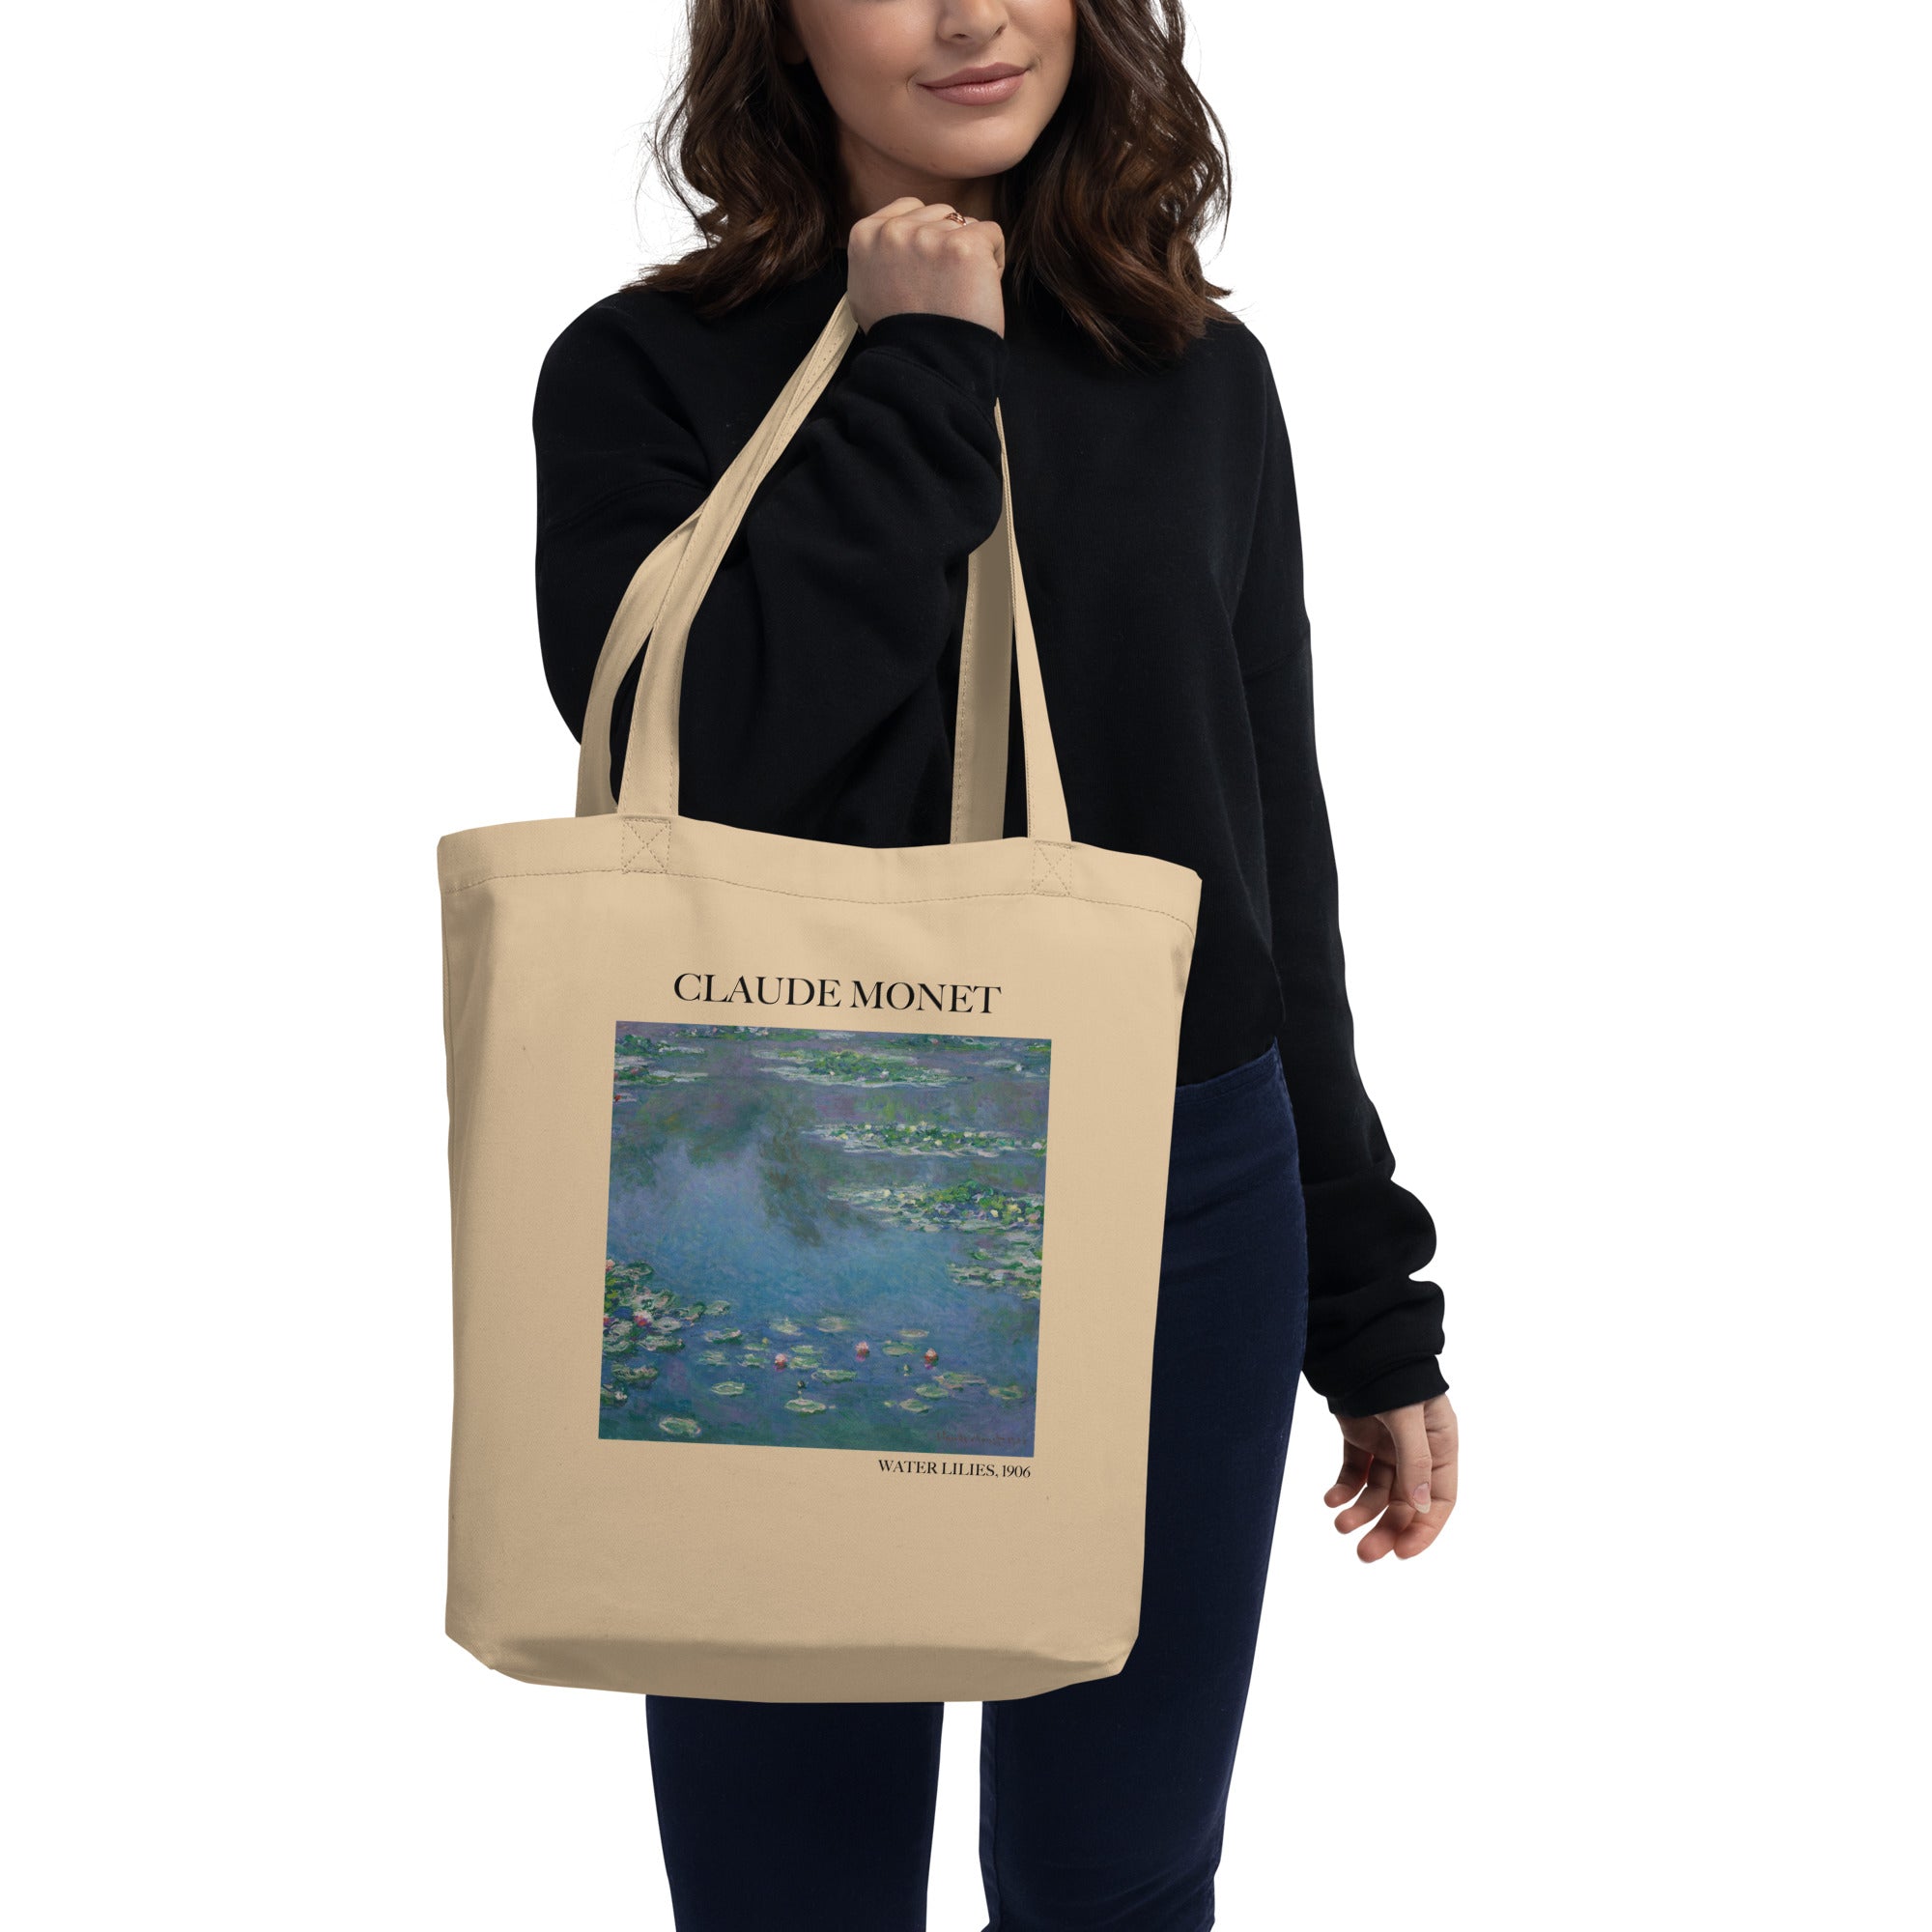 Claude Monet - Seerosen - berühmtes Gemälde - Einkaufstasche - Umweltfreundliche Kunst-Einkaufstasche